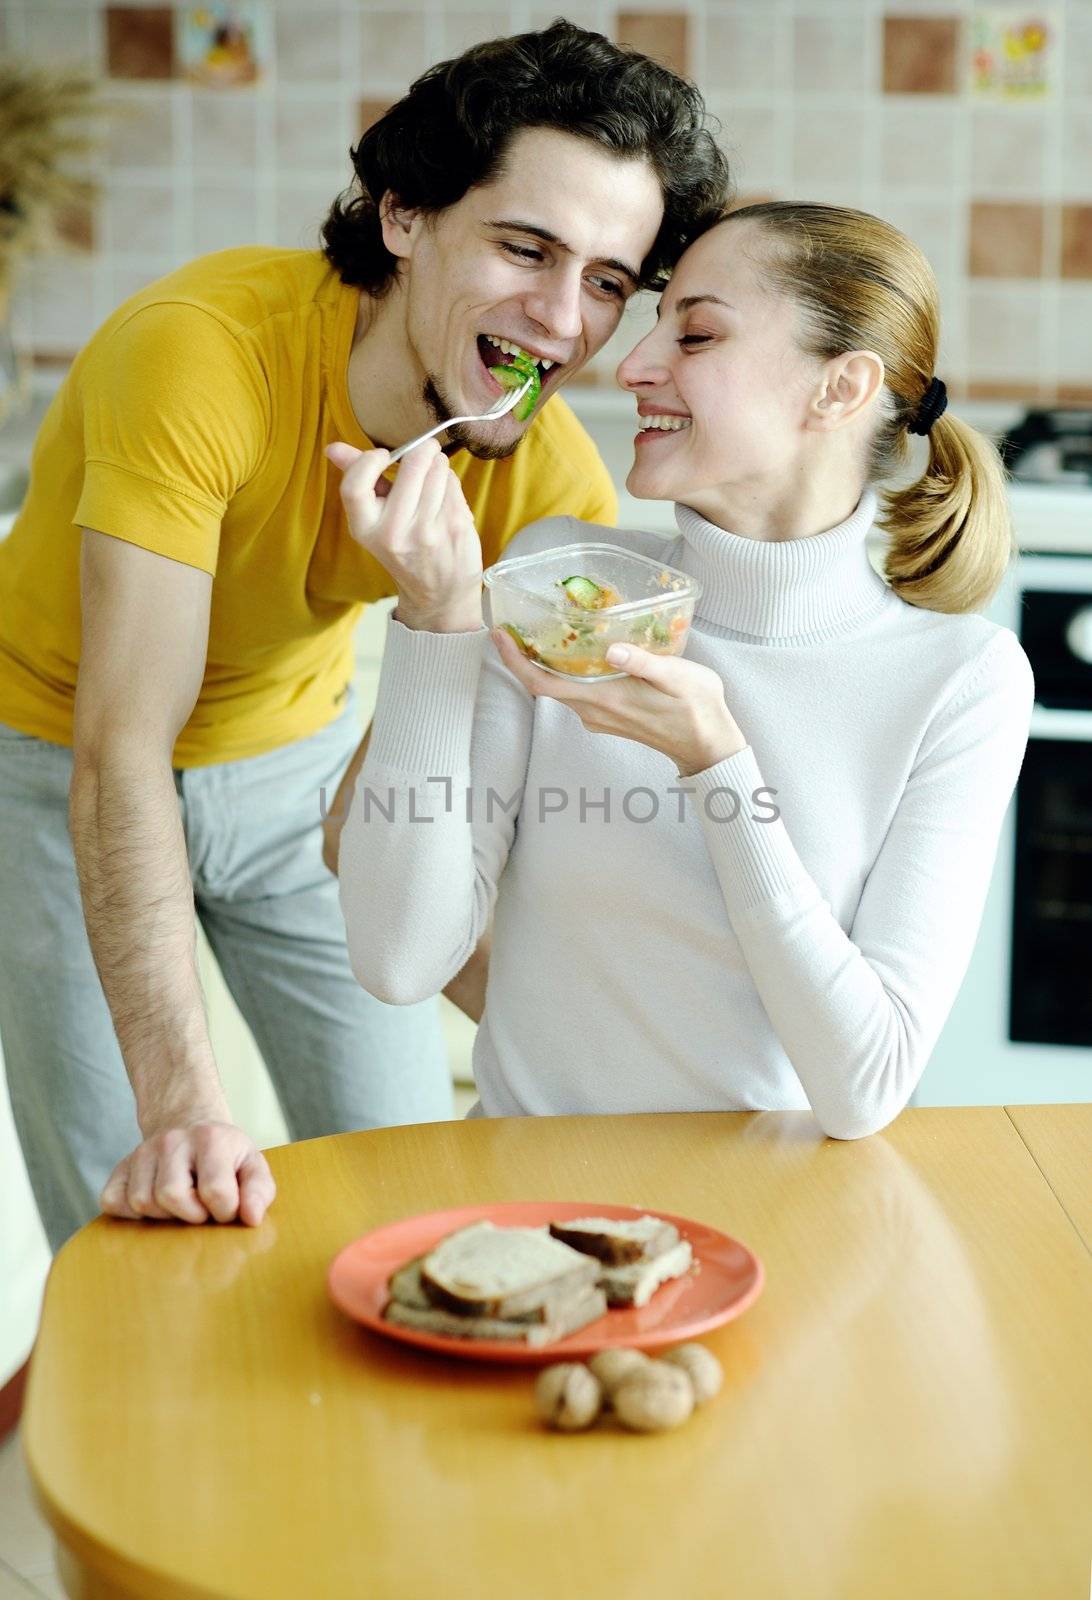 Eating couple by velkol